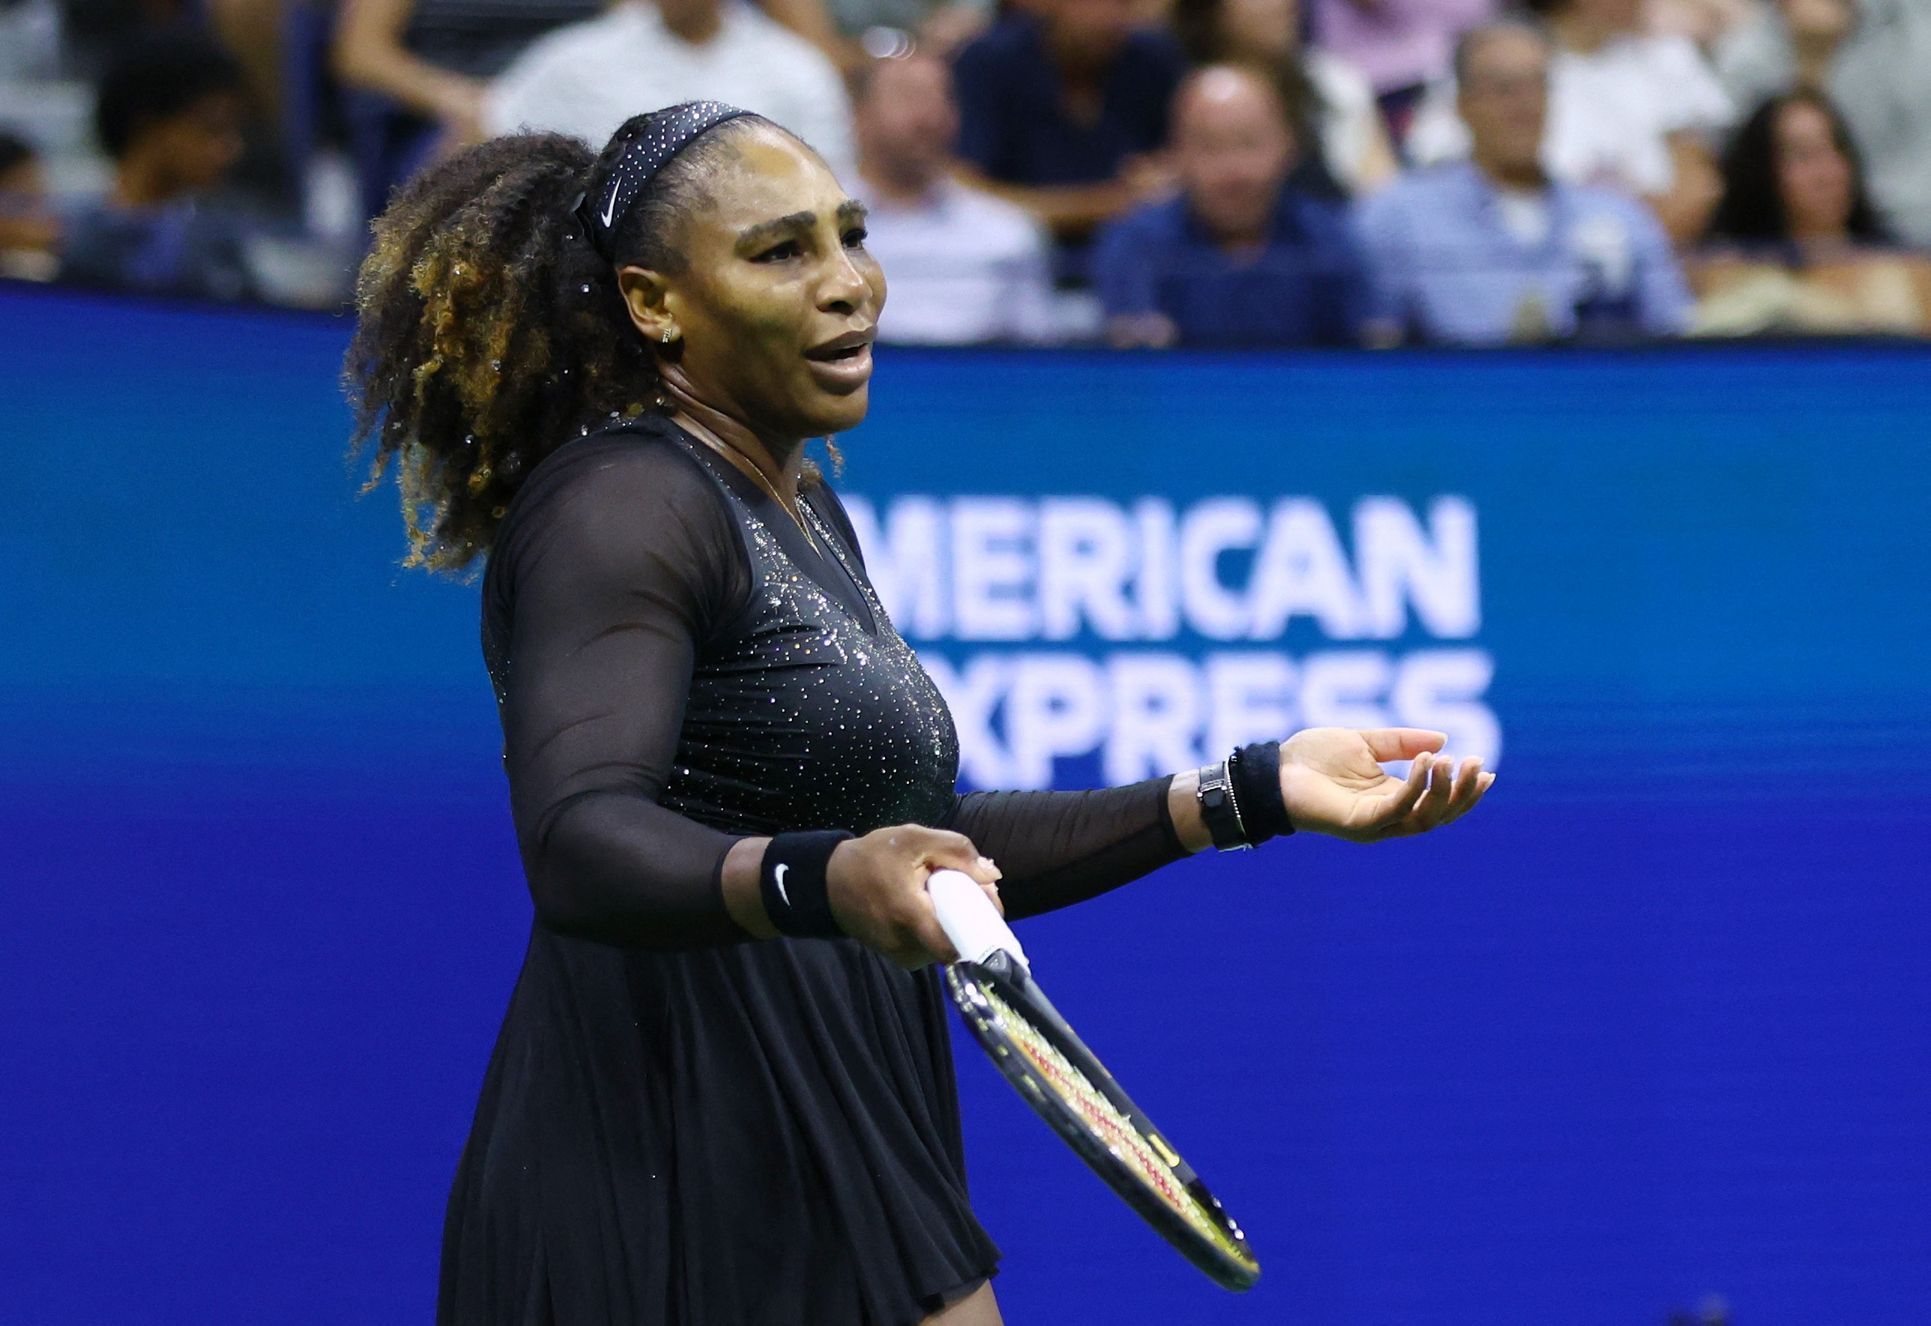 Serena Williamsová vypadla ve 3. kole US Open